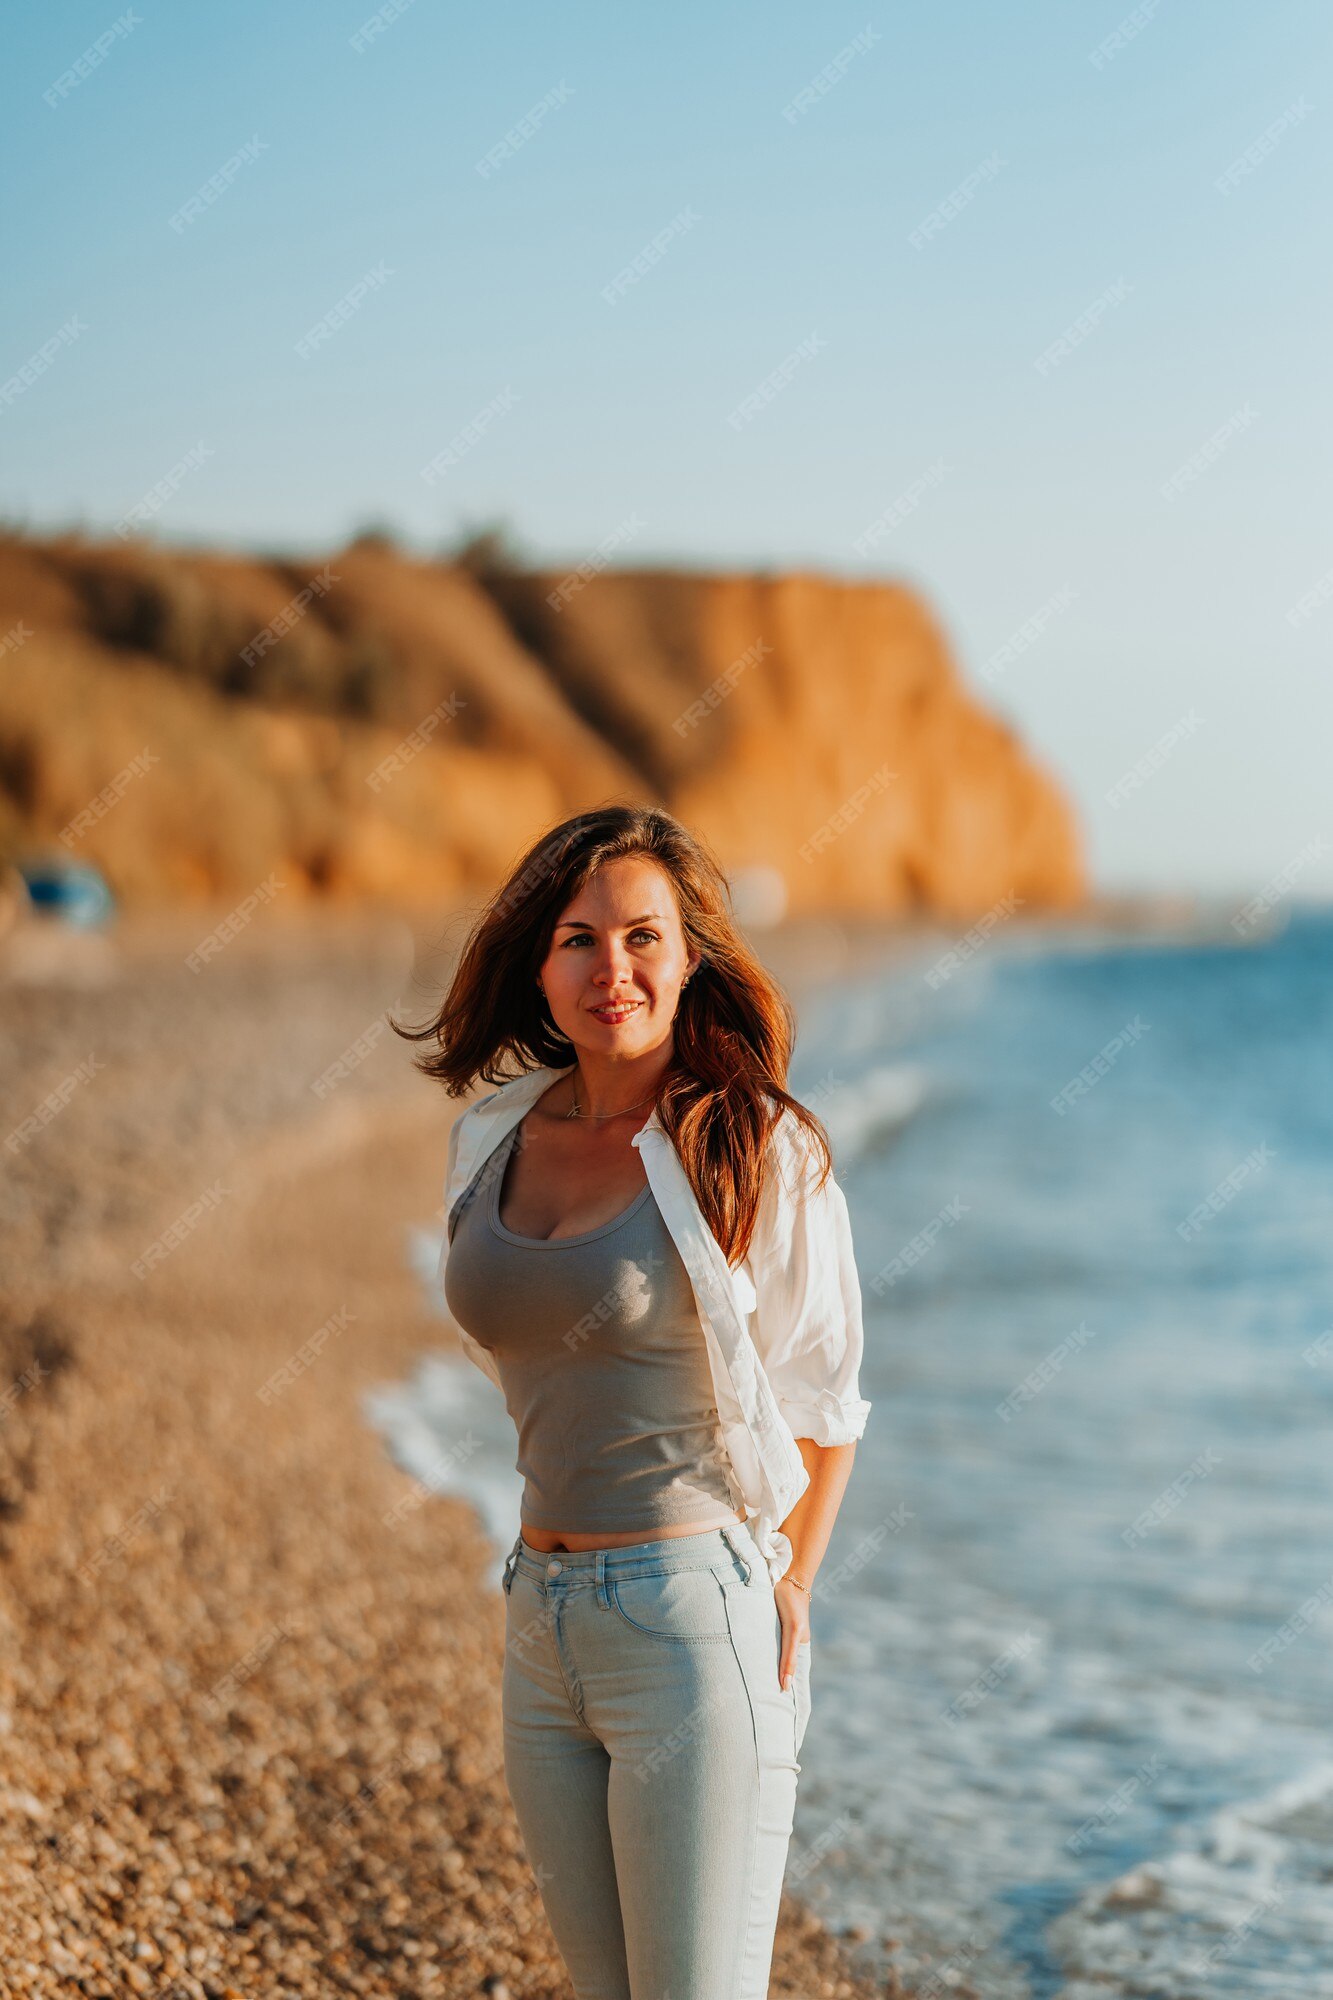 Una encantadora joven con camisa blanca y jeans en una playa romántica junto al mar | Foto